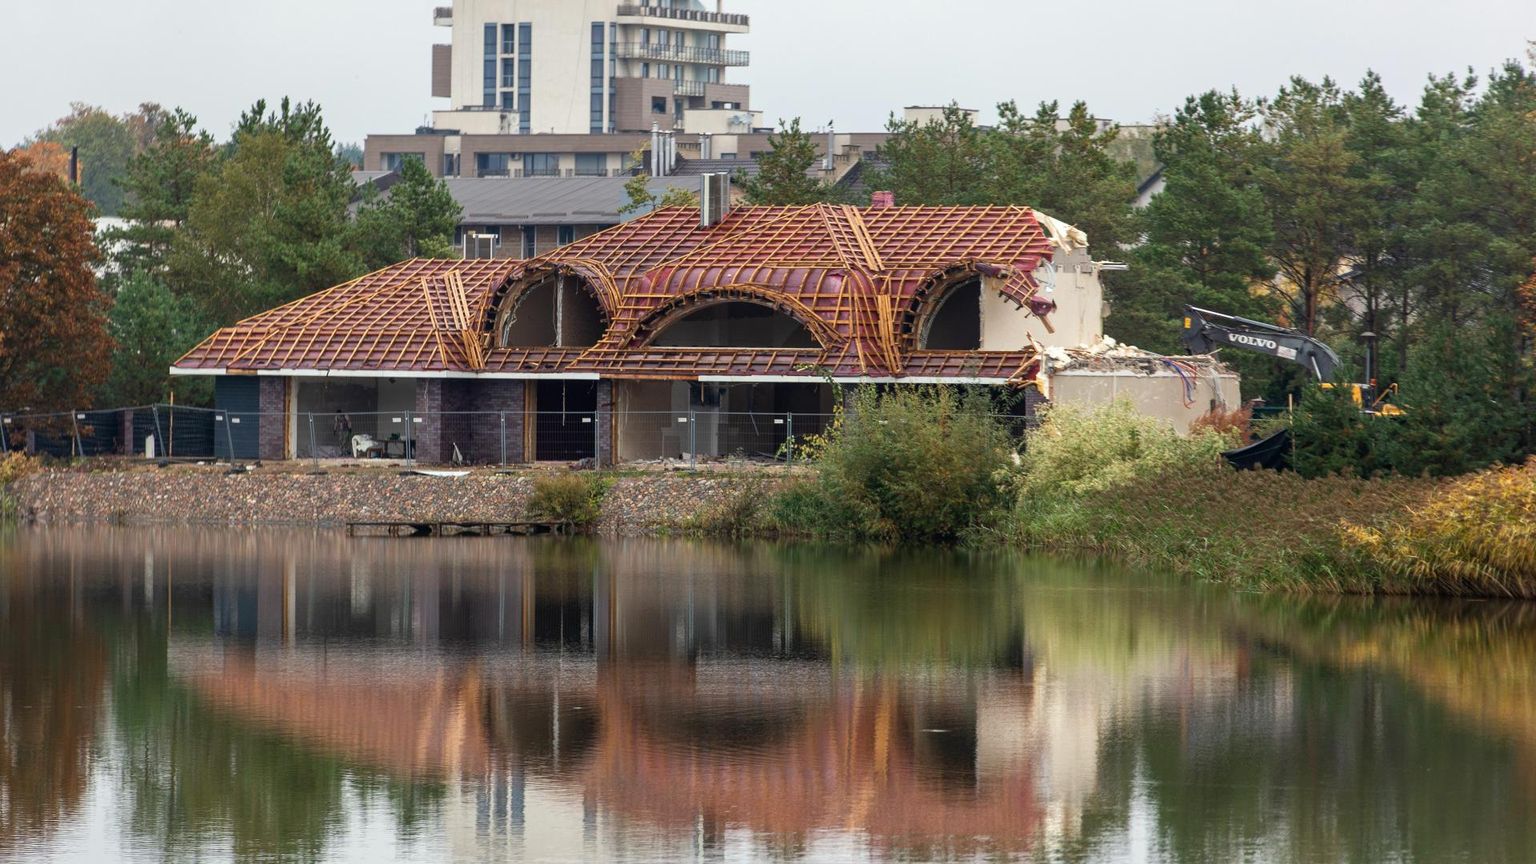 Druskininkai linnapea Ričardas Malinauskase Vijūnėlė villa lammutamine 2019. aastal. 